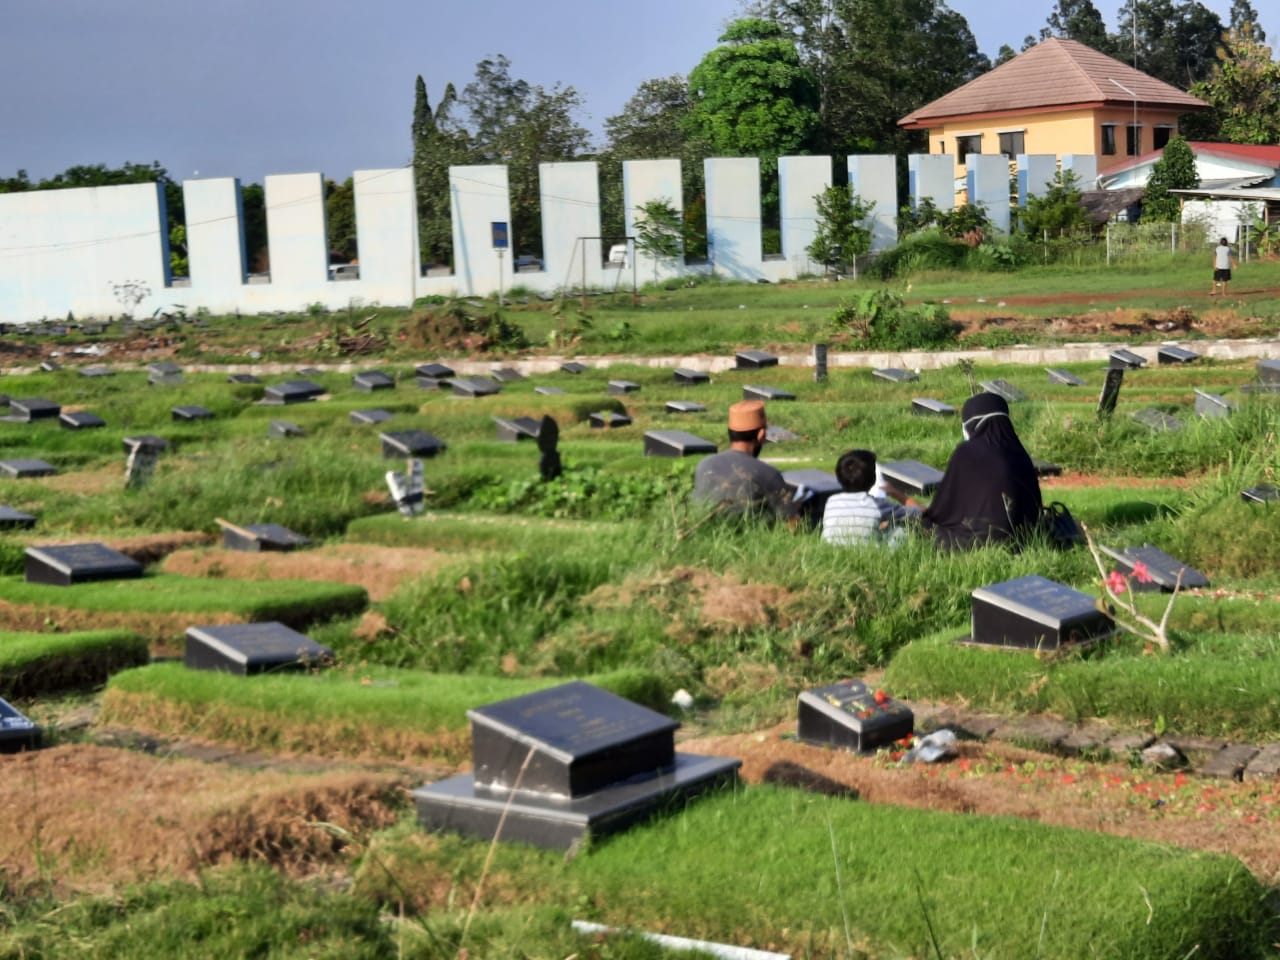 Suasana peziarah ke makam keluarga saat menjelang Ramadan yang berlokasi Taman Pemakaman Umum (TPU) Selapajang di Jalan Raya Iskandar Muda No. 46, RT4/RW2, Selapajang Jaya, Kecamatan Neglasari, Kota Tangerang, Minggu (10/04/2021).